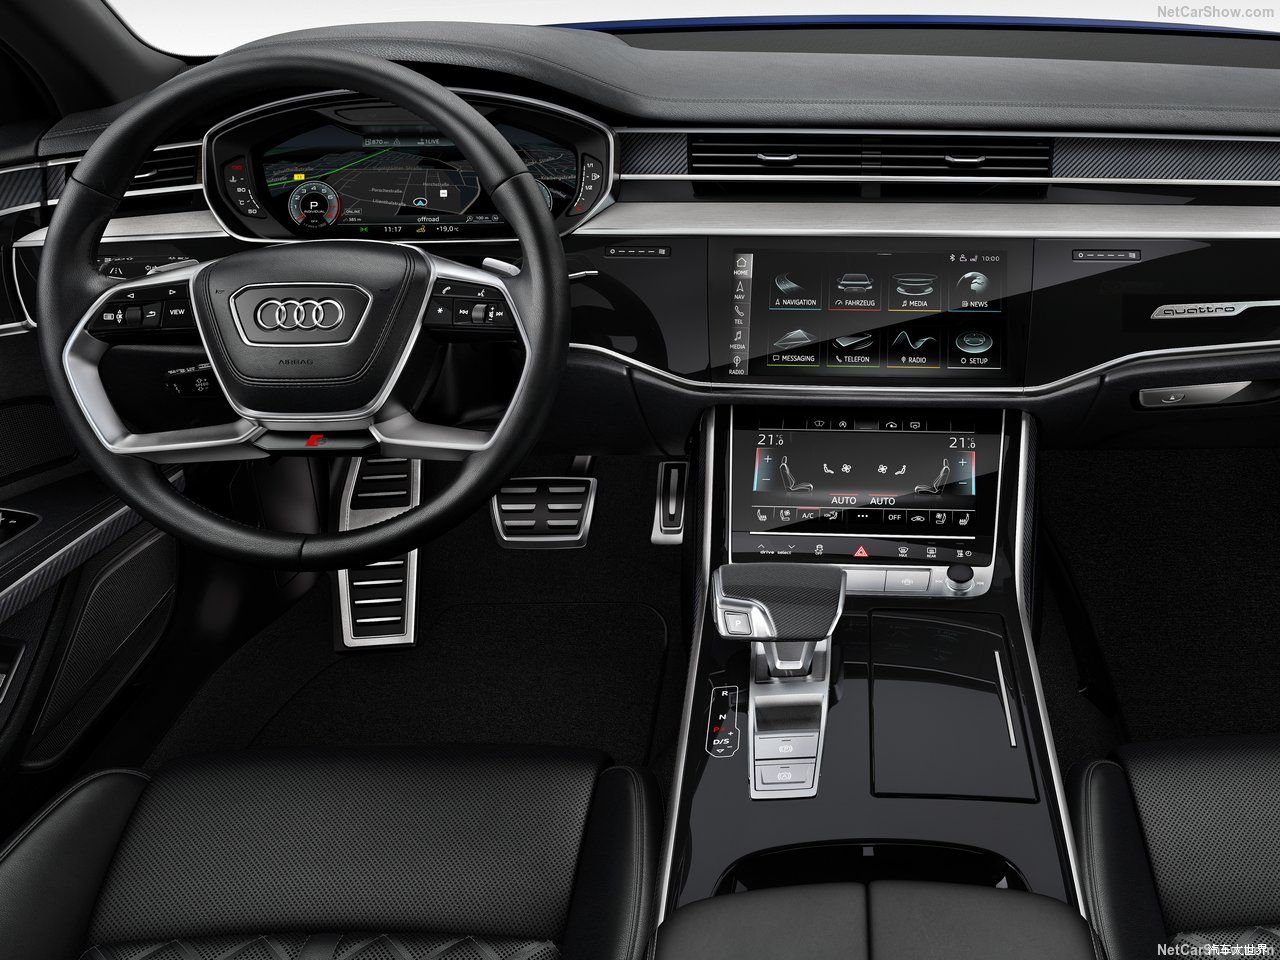 500 马力的八缸豪华性能轿车 奥迪全新一代s8官图发布